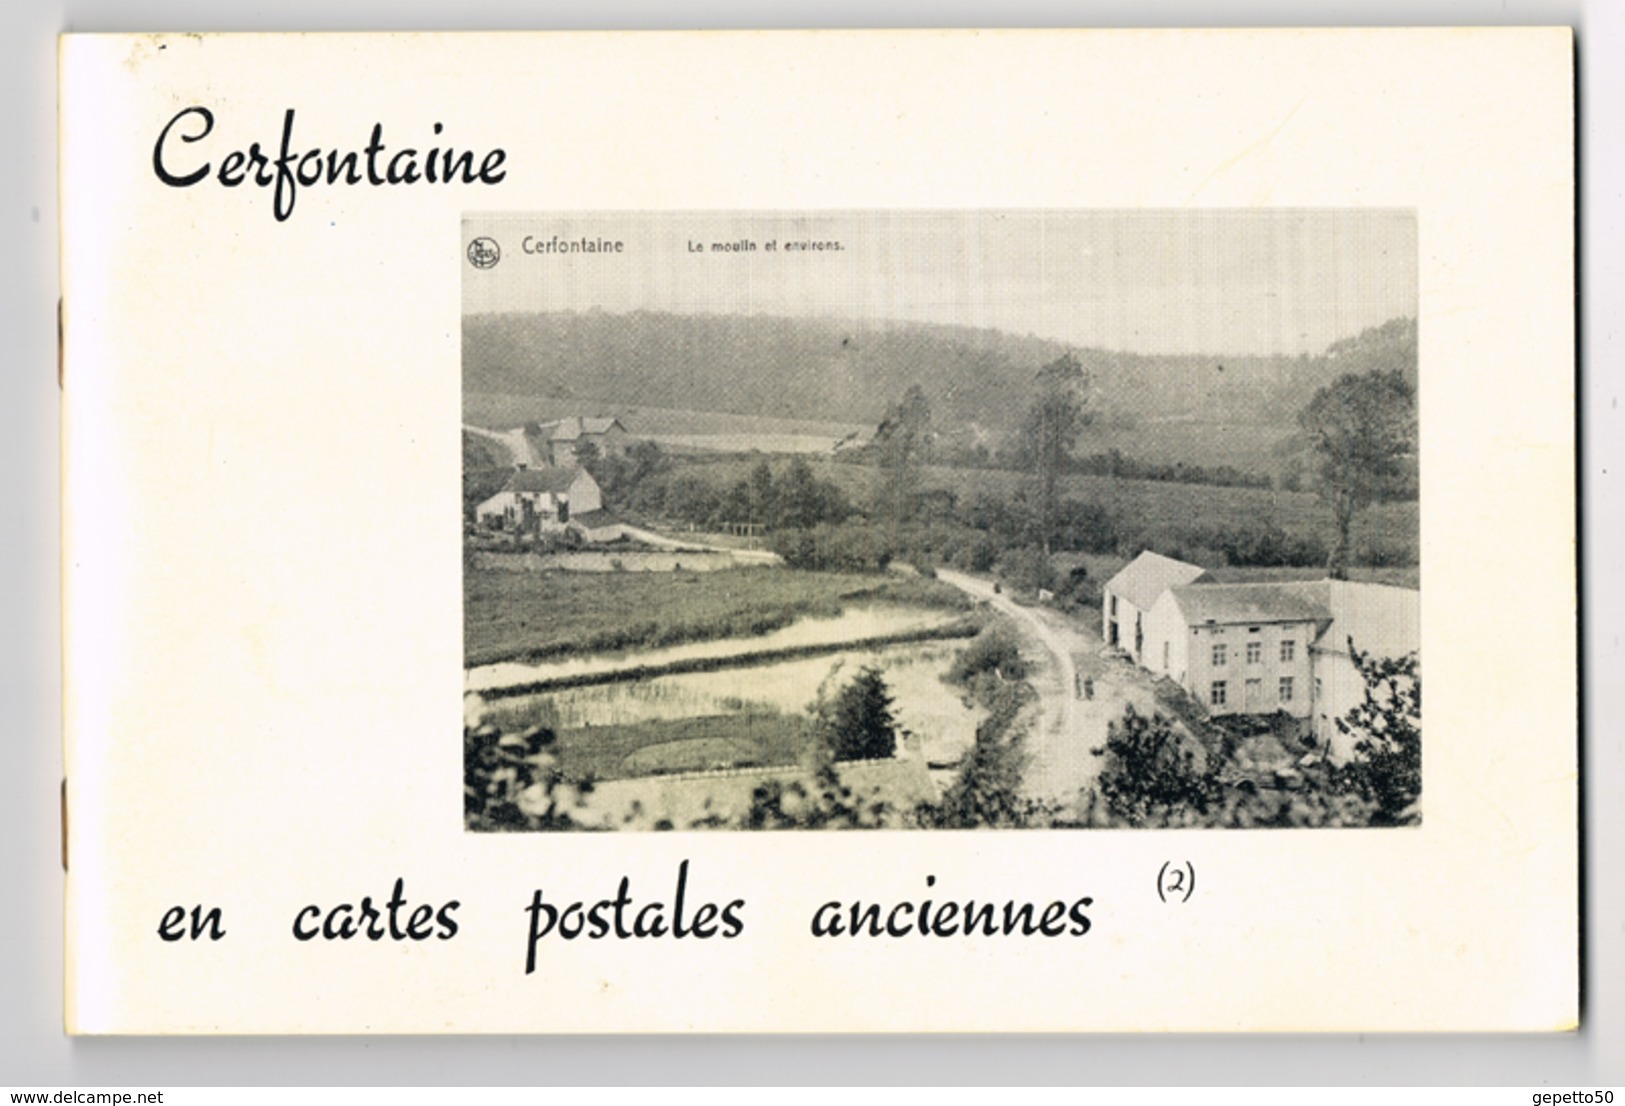 Cerfontaine Livre (n°2) De CP AnciennesEd Musée De Cerfontaine Repro De 70 Cartes - Libros & Catálogos